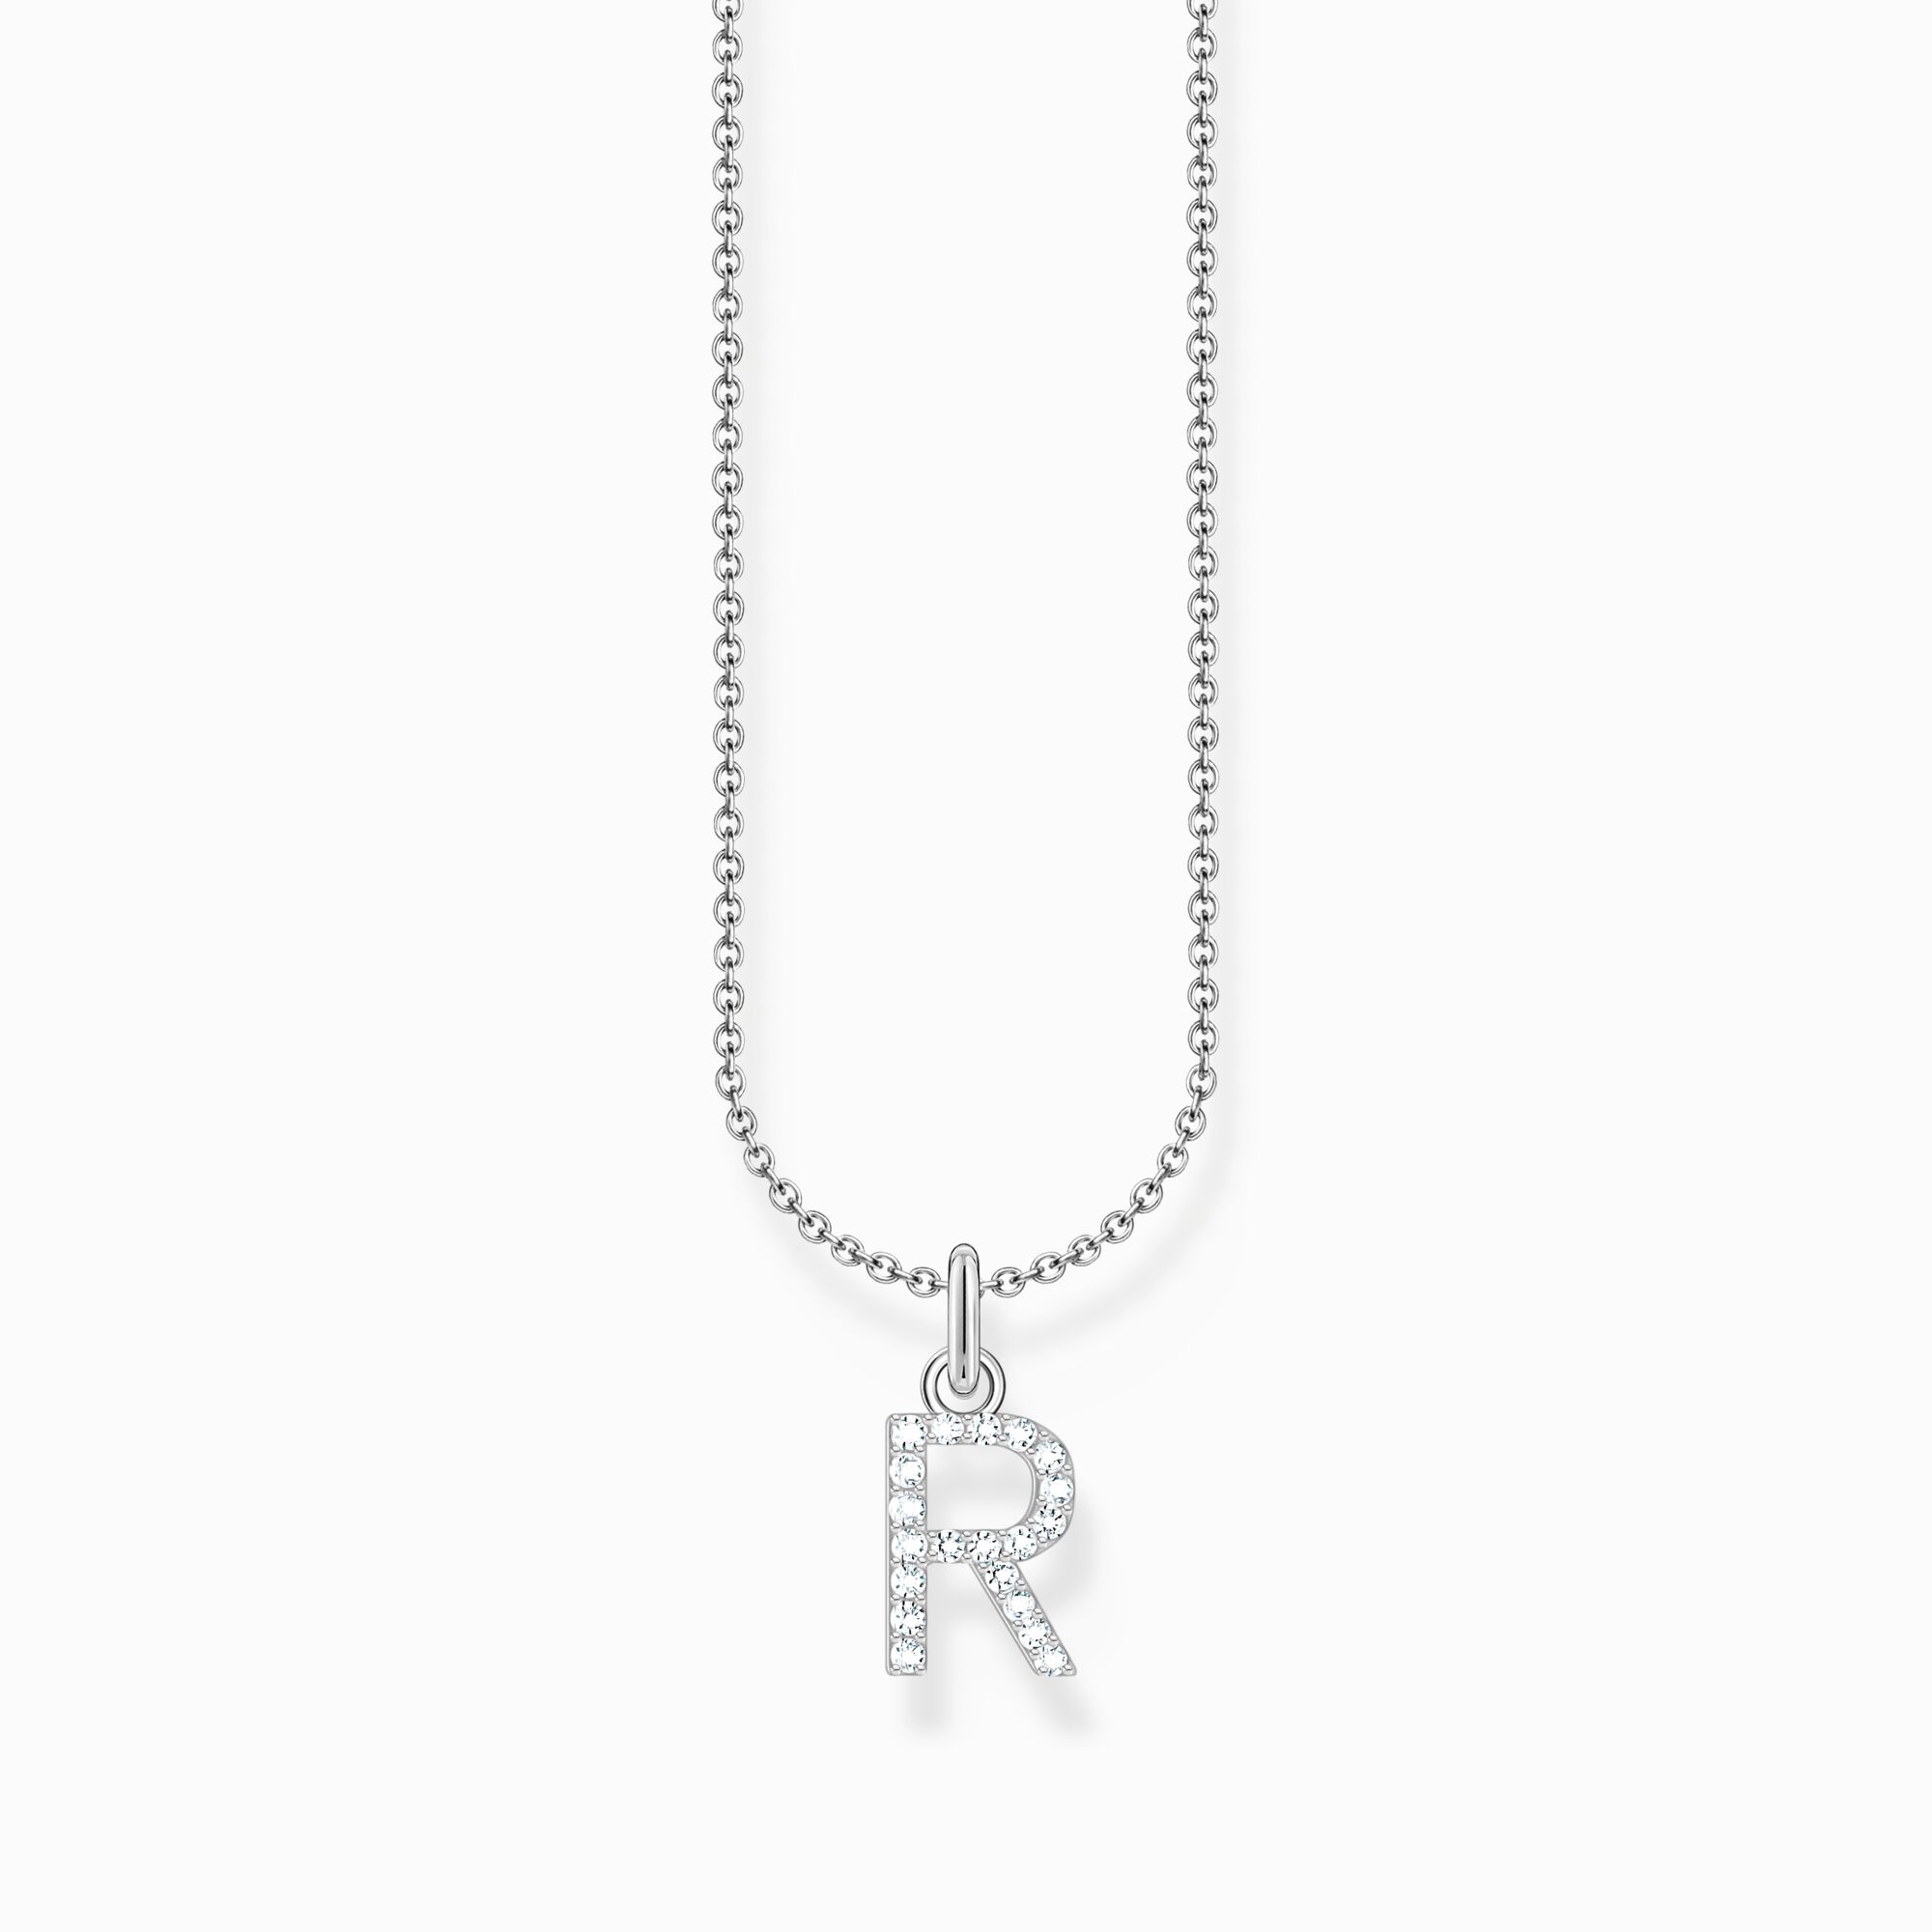 Halsband med bokstaven R, silver ur kollektionen Charming Collection i THOMAS SABO:s onlineshop